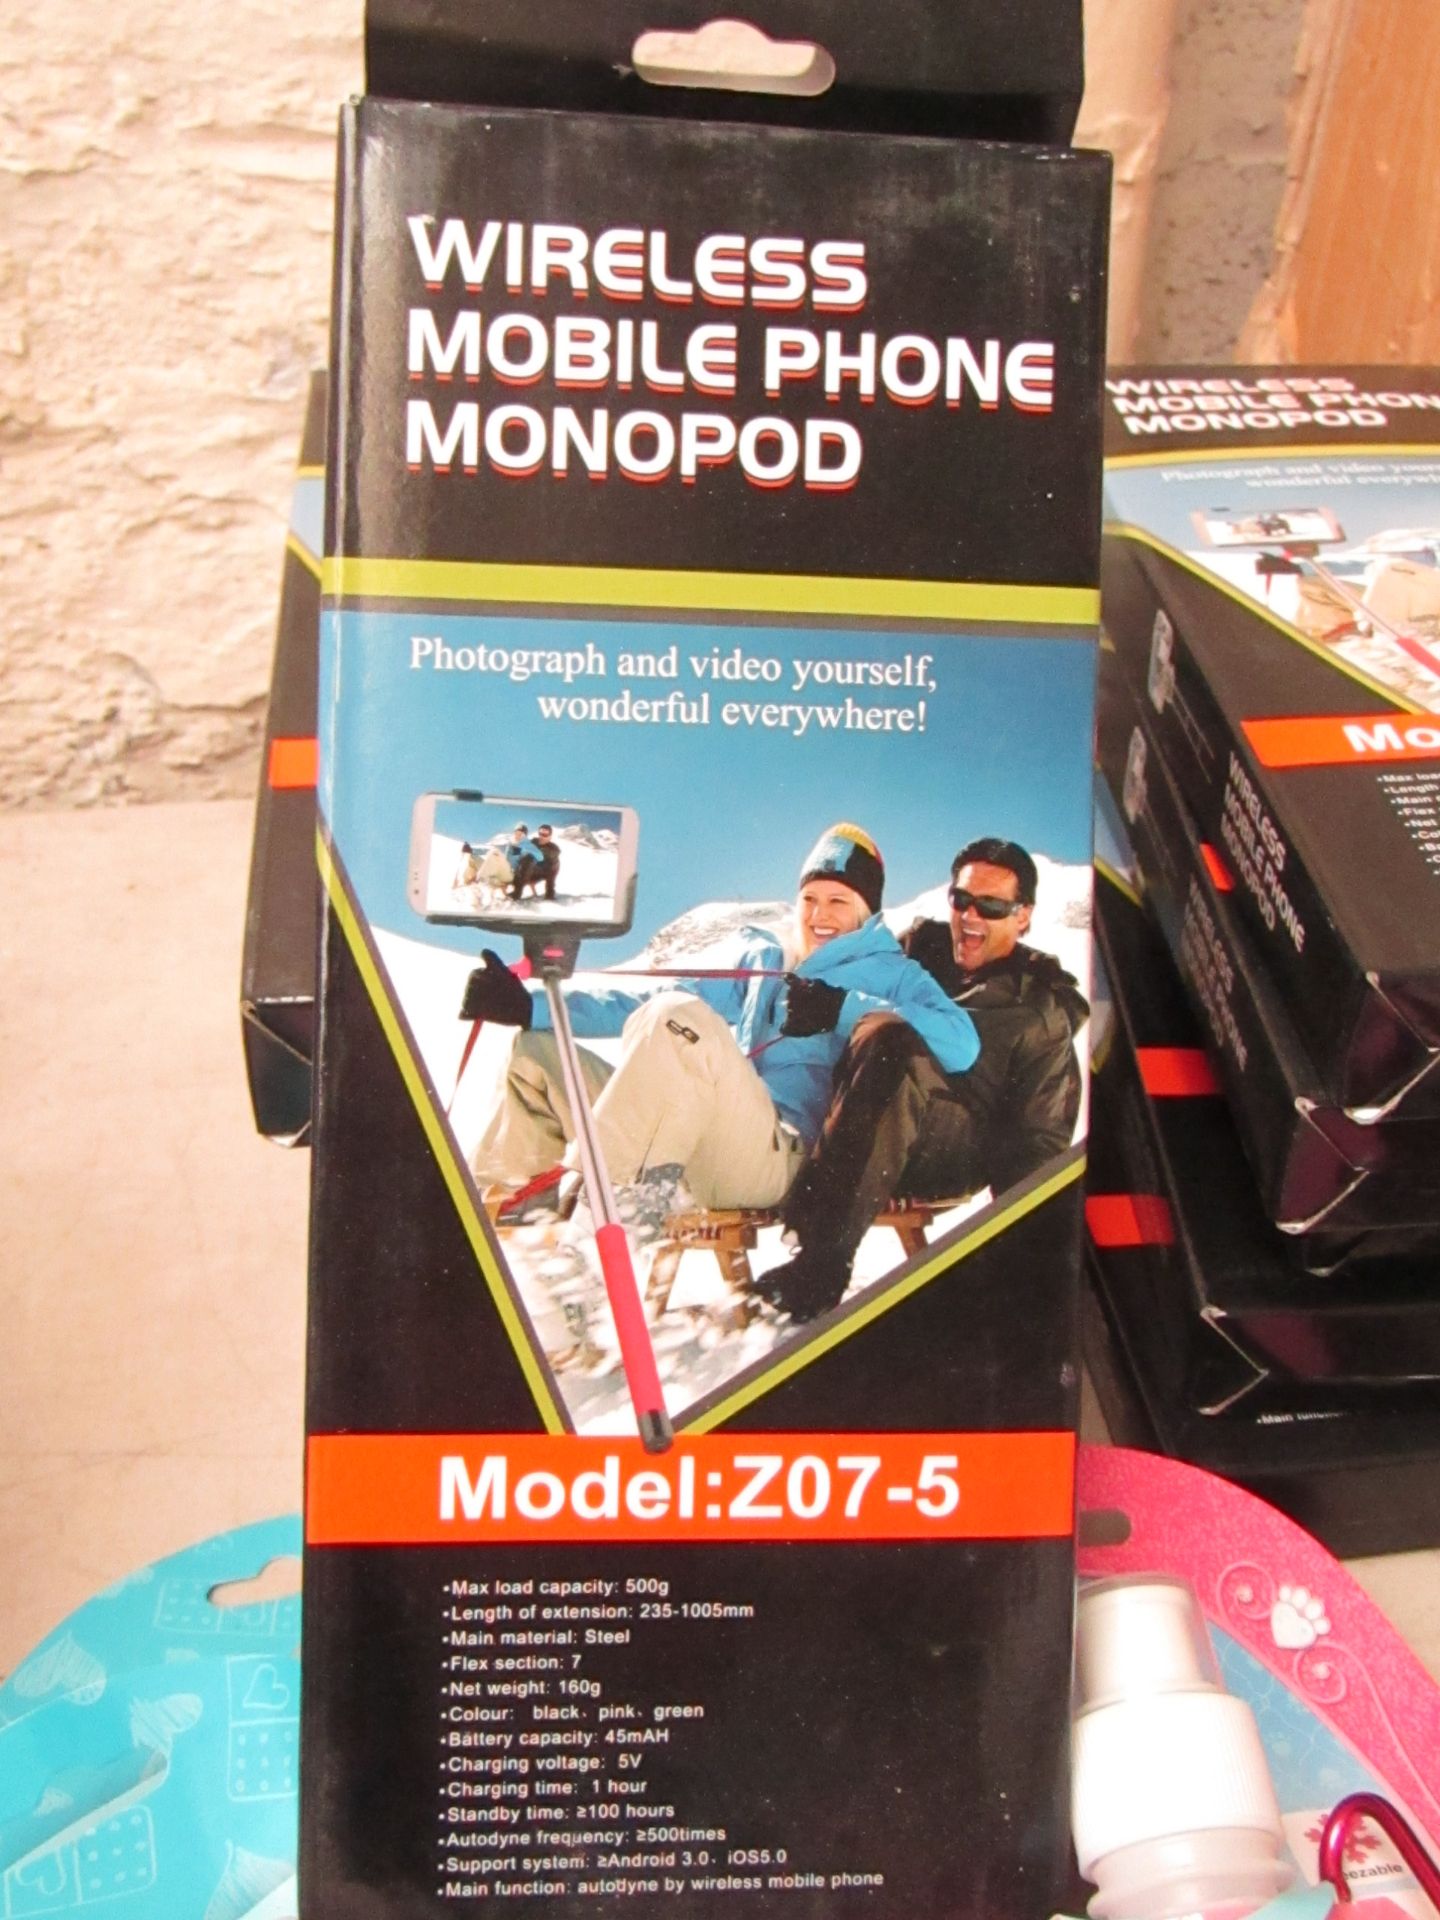 5 x Wireless Mobile Phone Monopod model :Z07-5 Selfie Sticks packaged